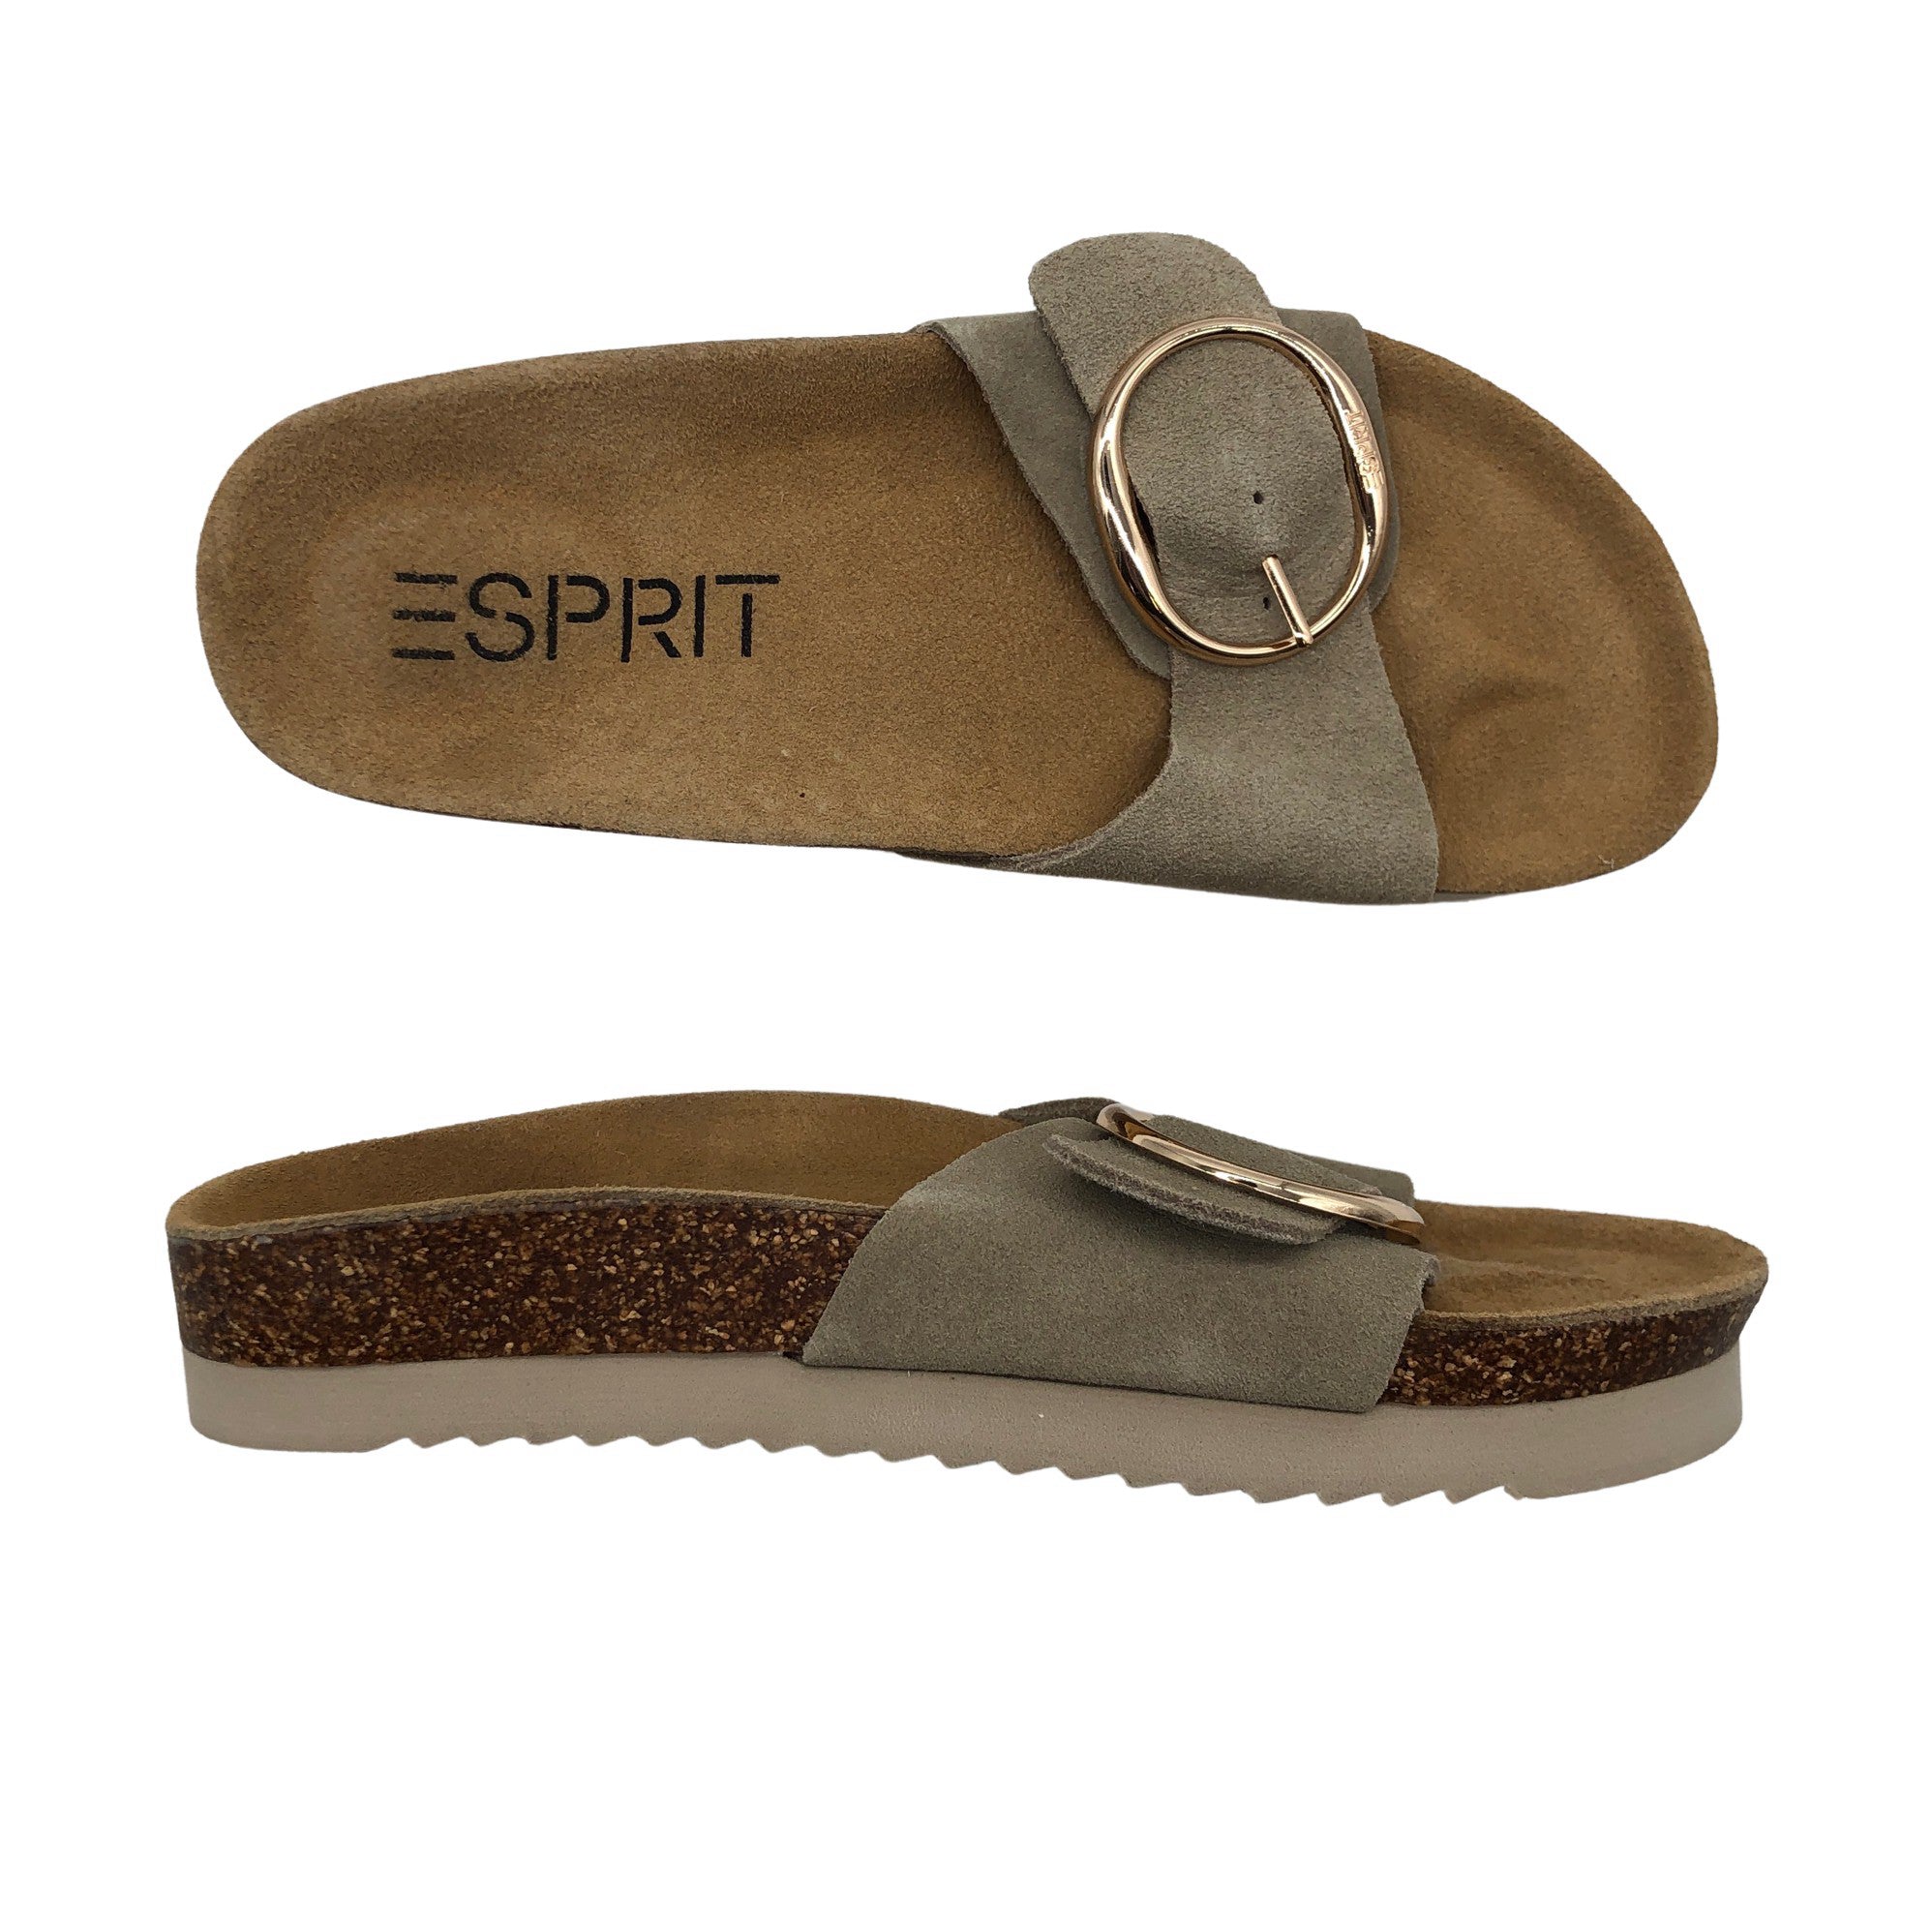 Women's Esprit Sandals, size 38 (Beige) | Emmy